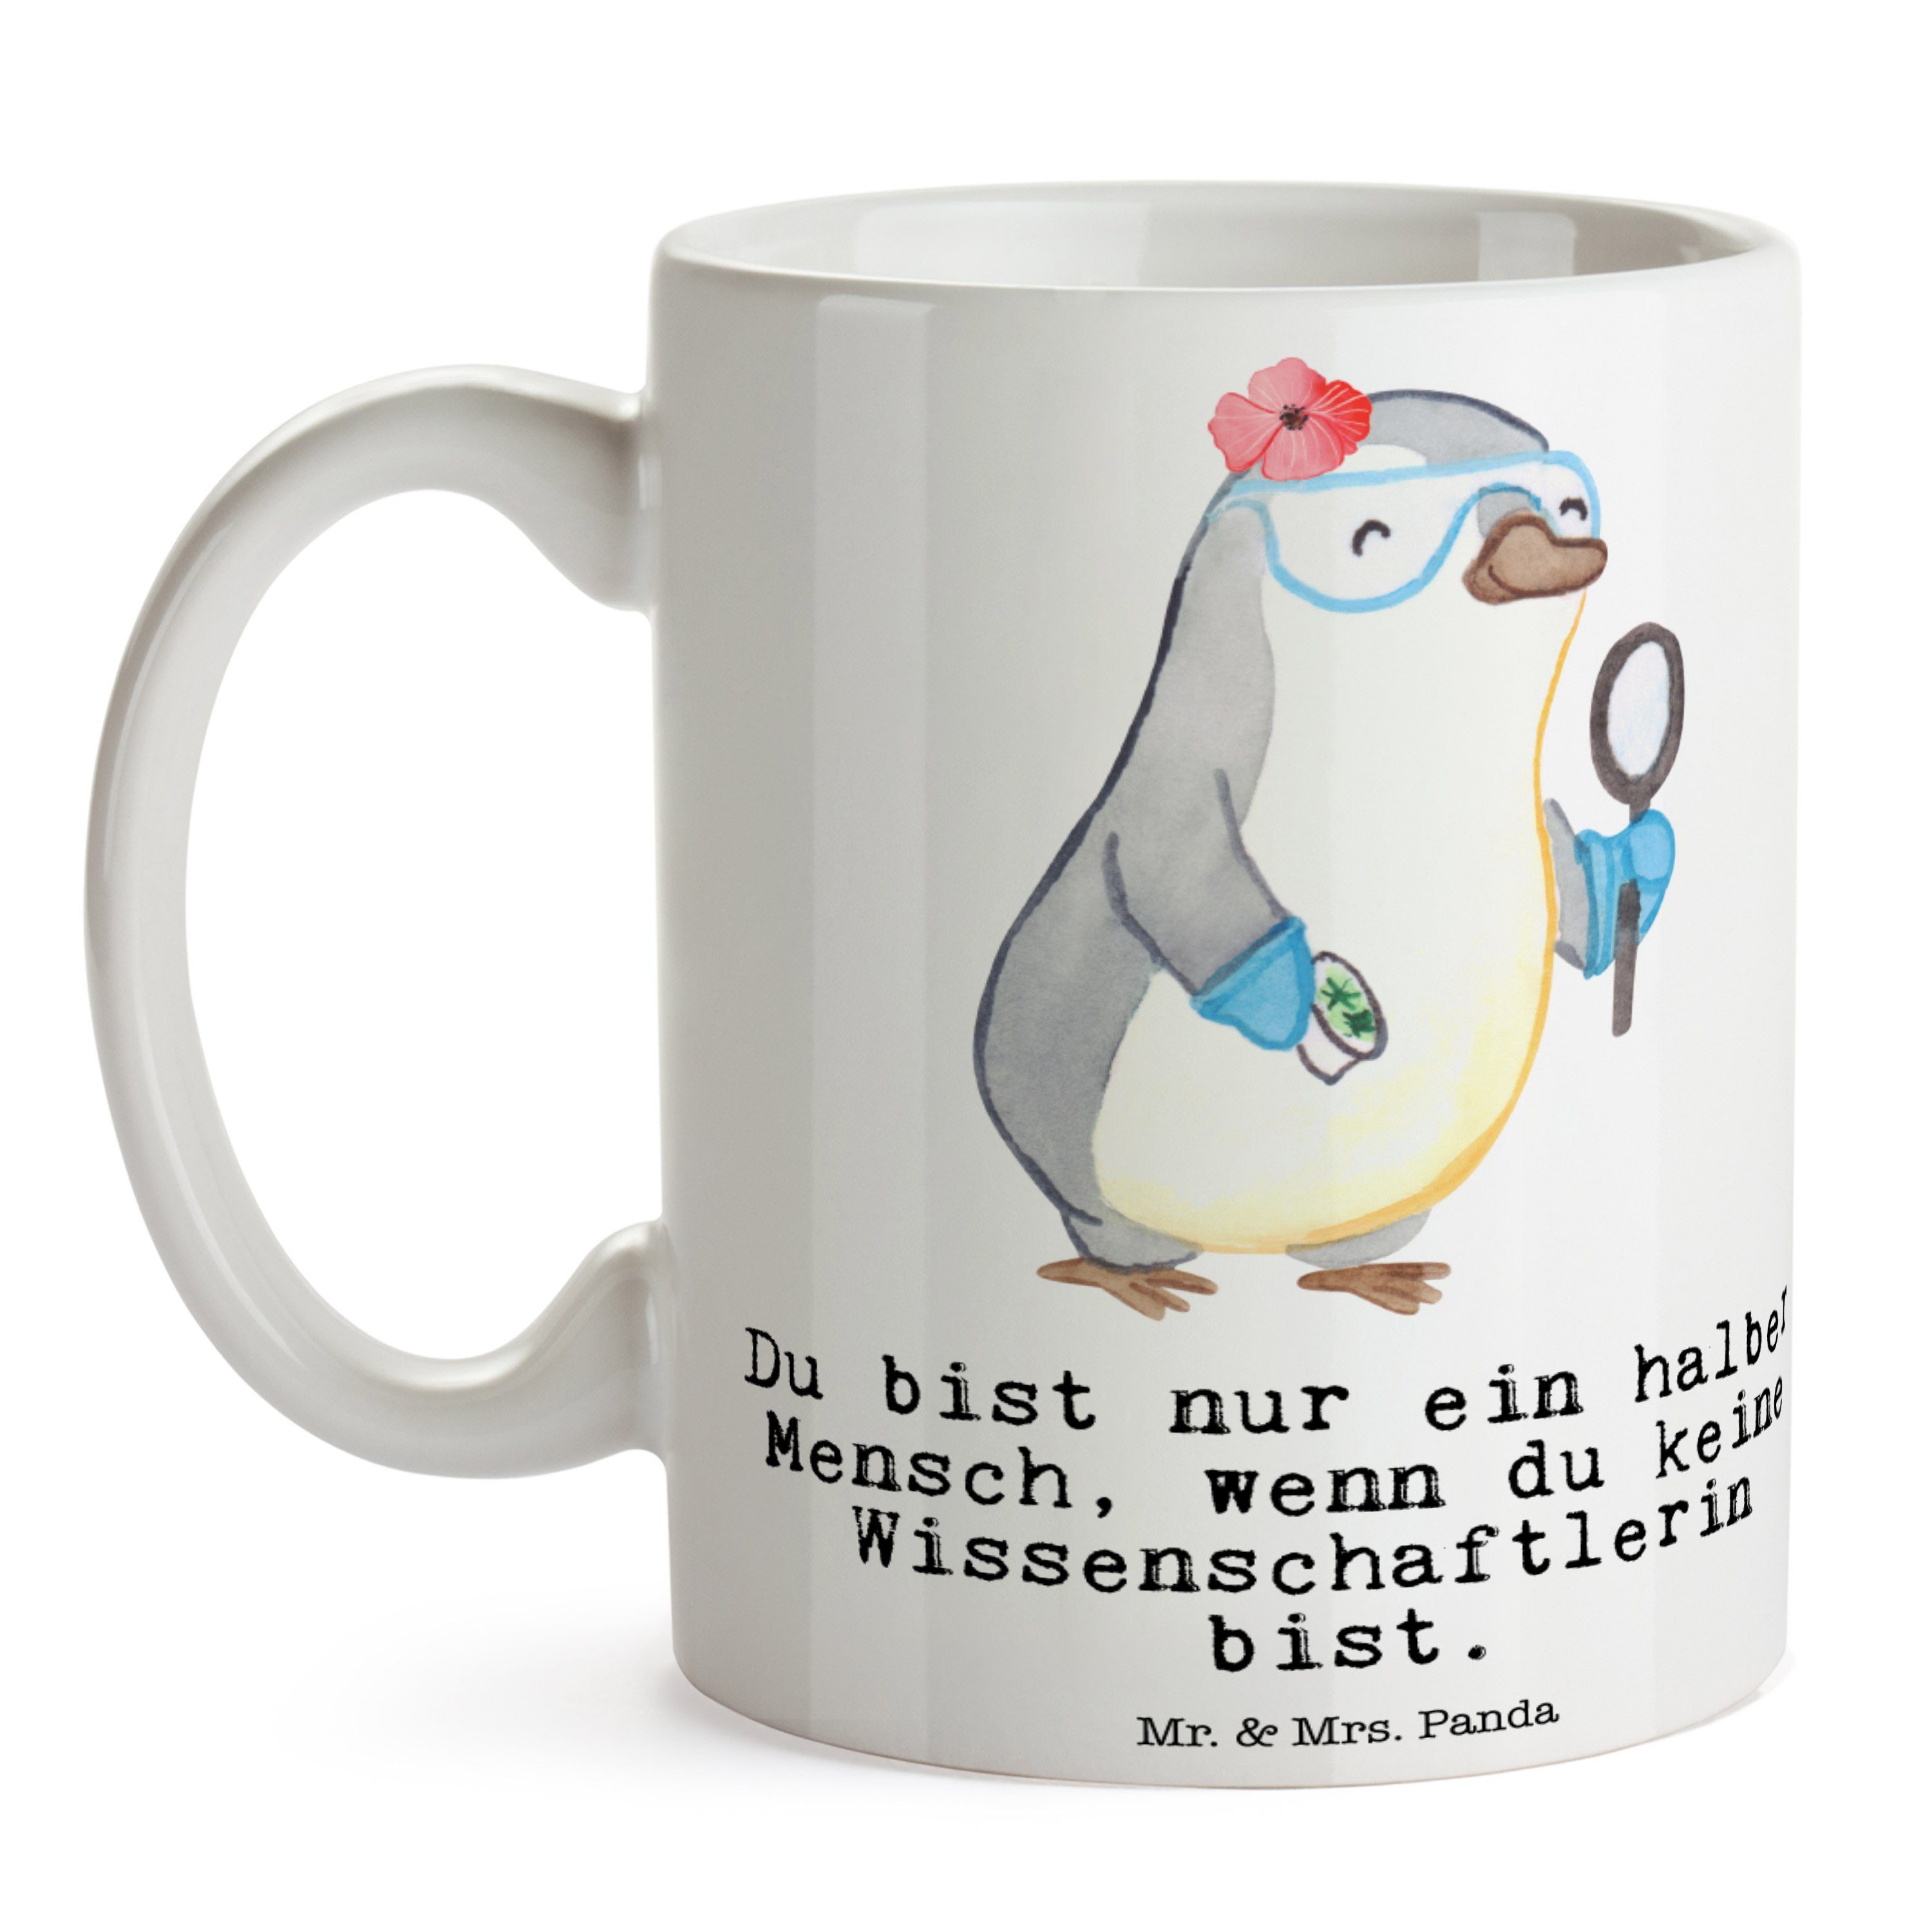 Mr. & Mrs. Tasse, Wissenschaftlerin Weiß mit Herz Kaffeetasse, Tasse Keramik - Aka, Geschenk, Panda 